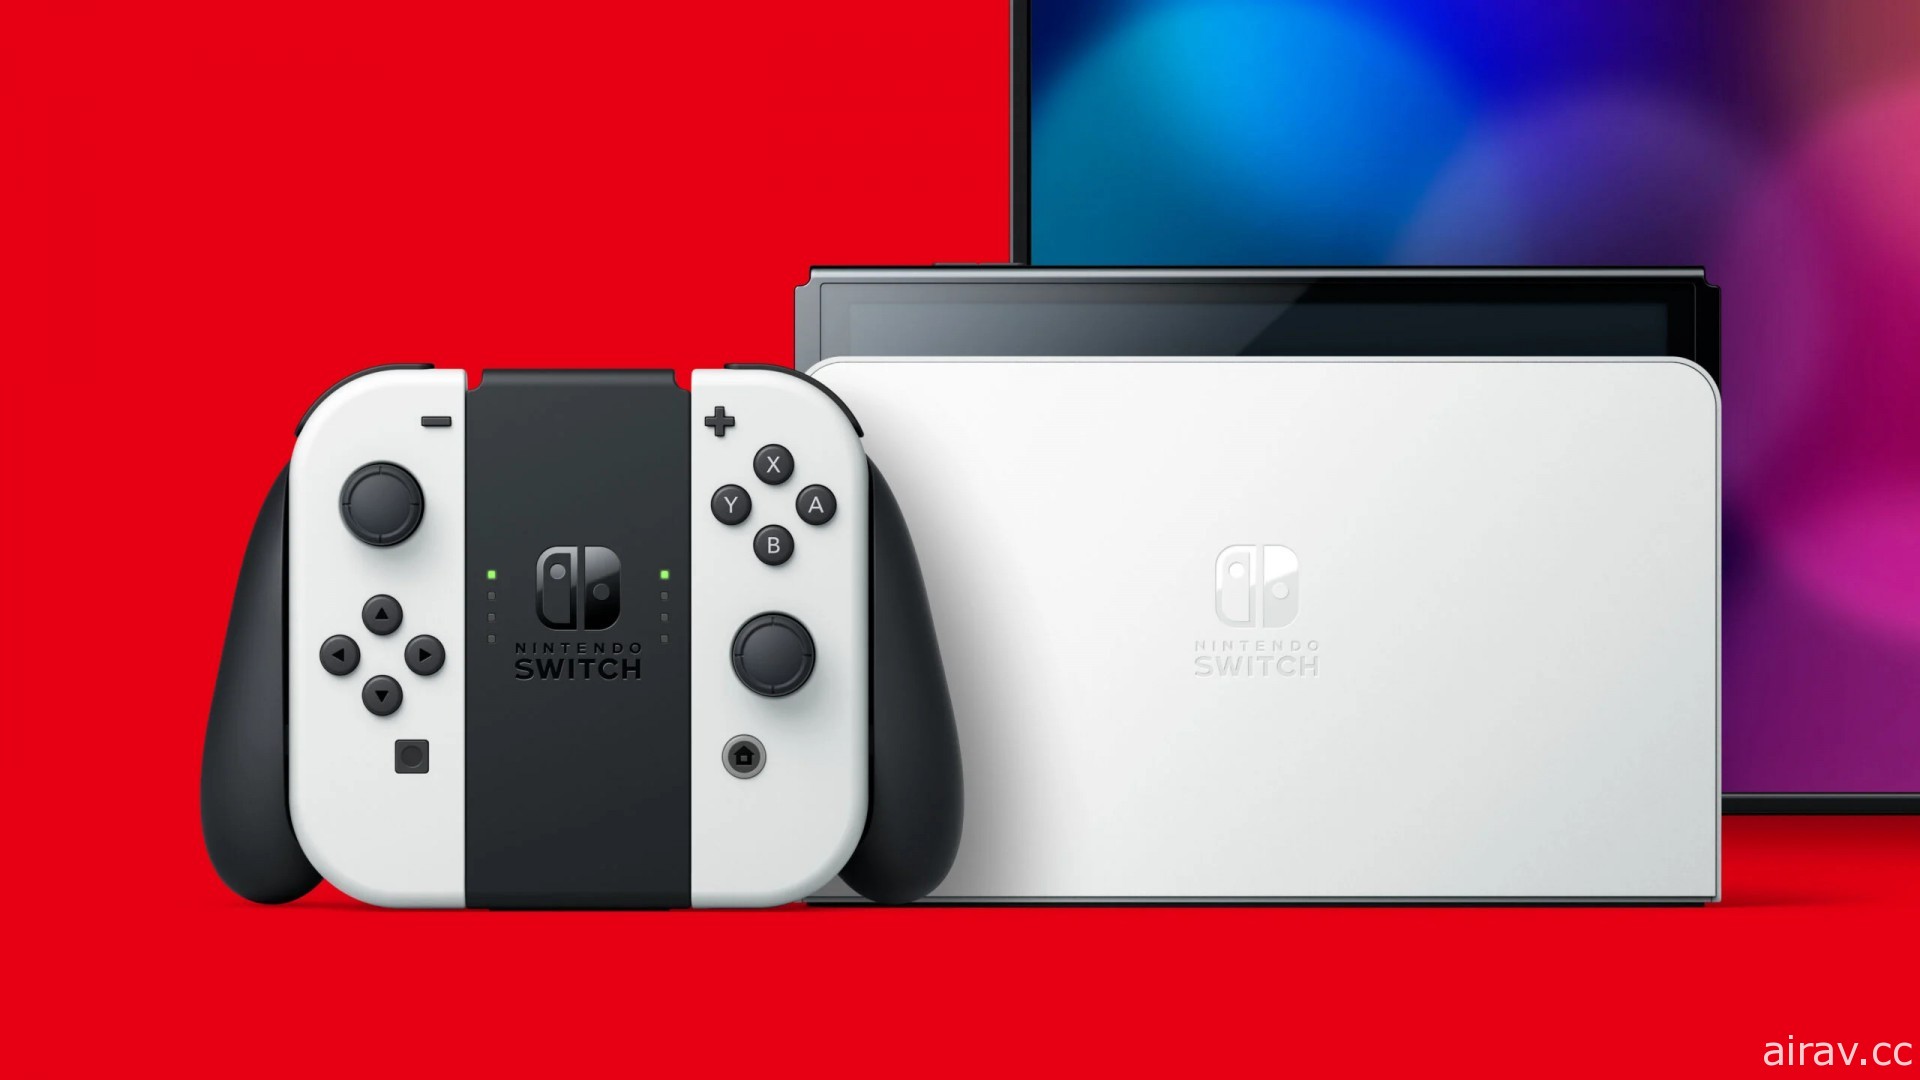 Nintendo Switch 释出 13.0.0 版系统软件更新 新增支援蓝牙耳机与底座更新功能